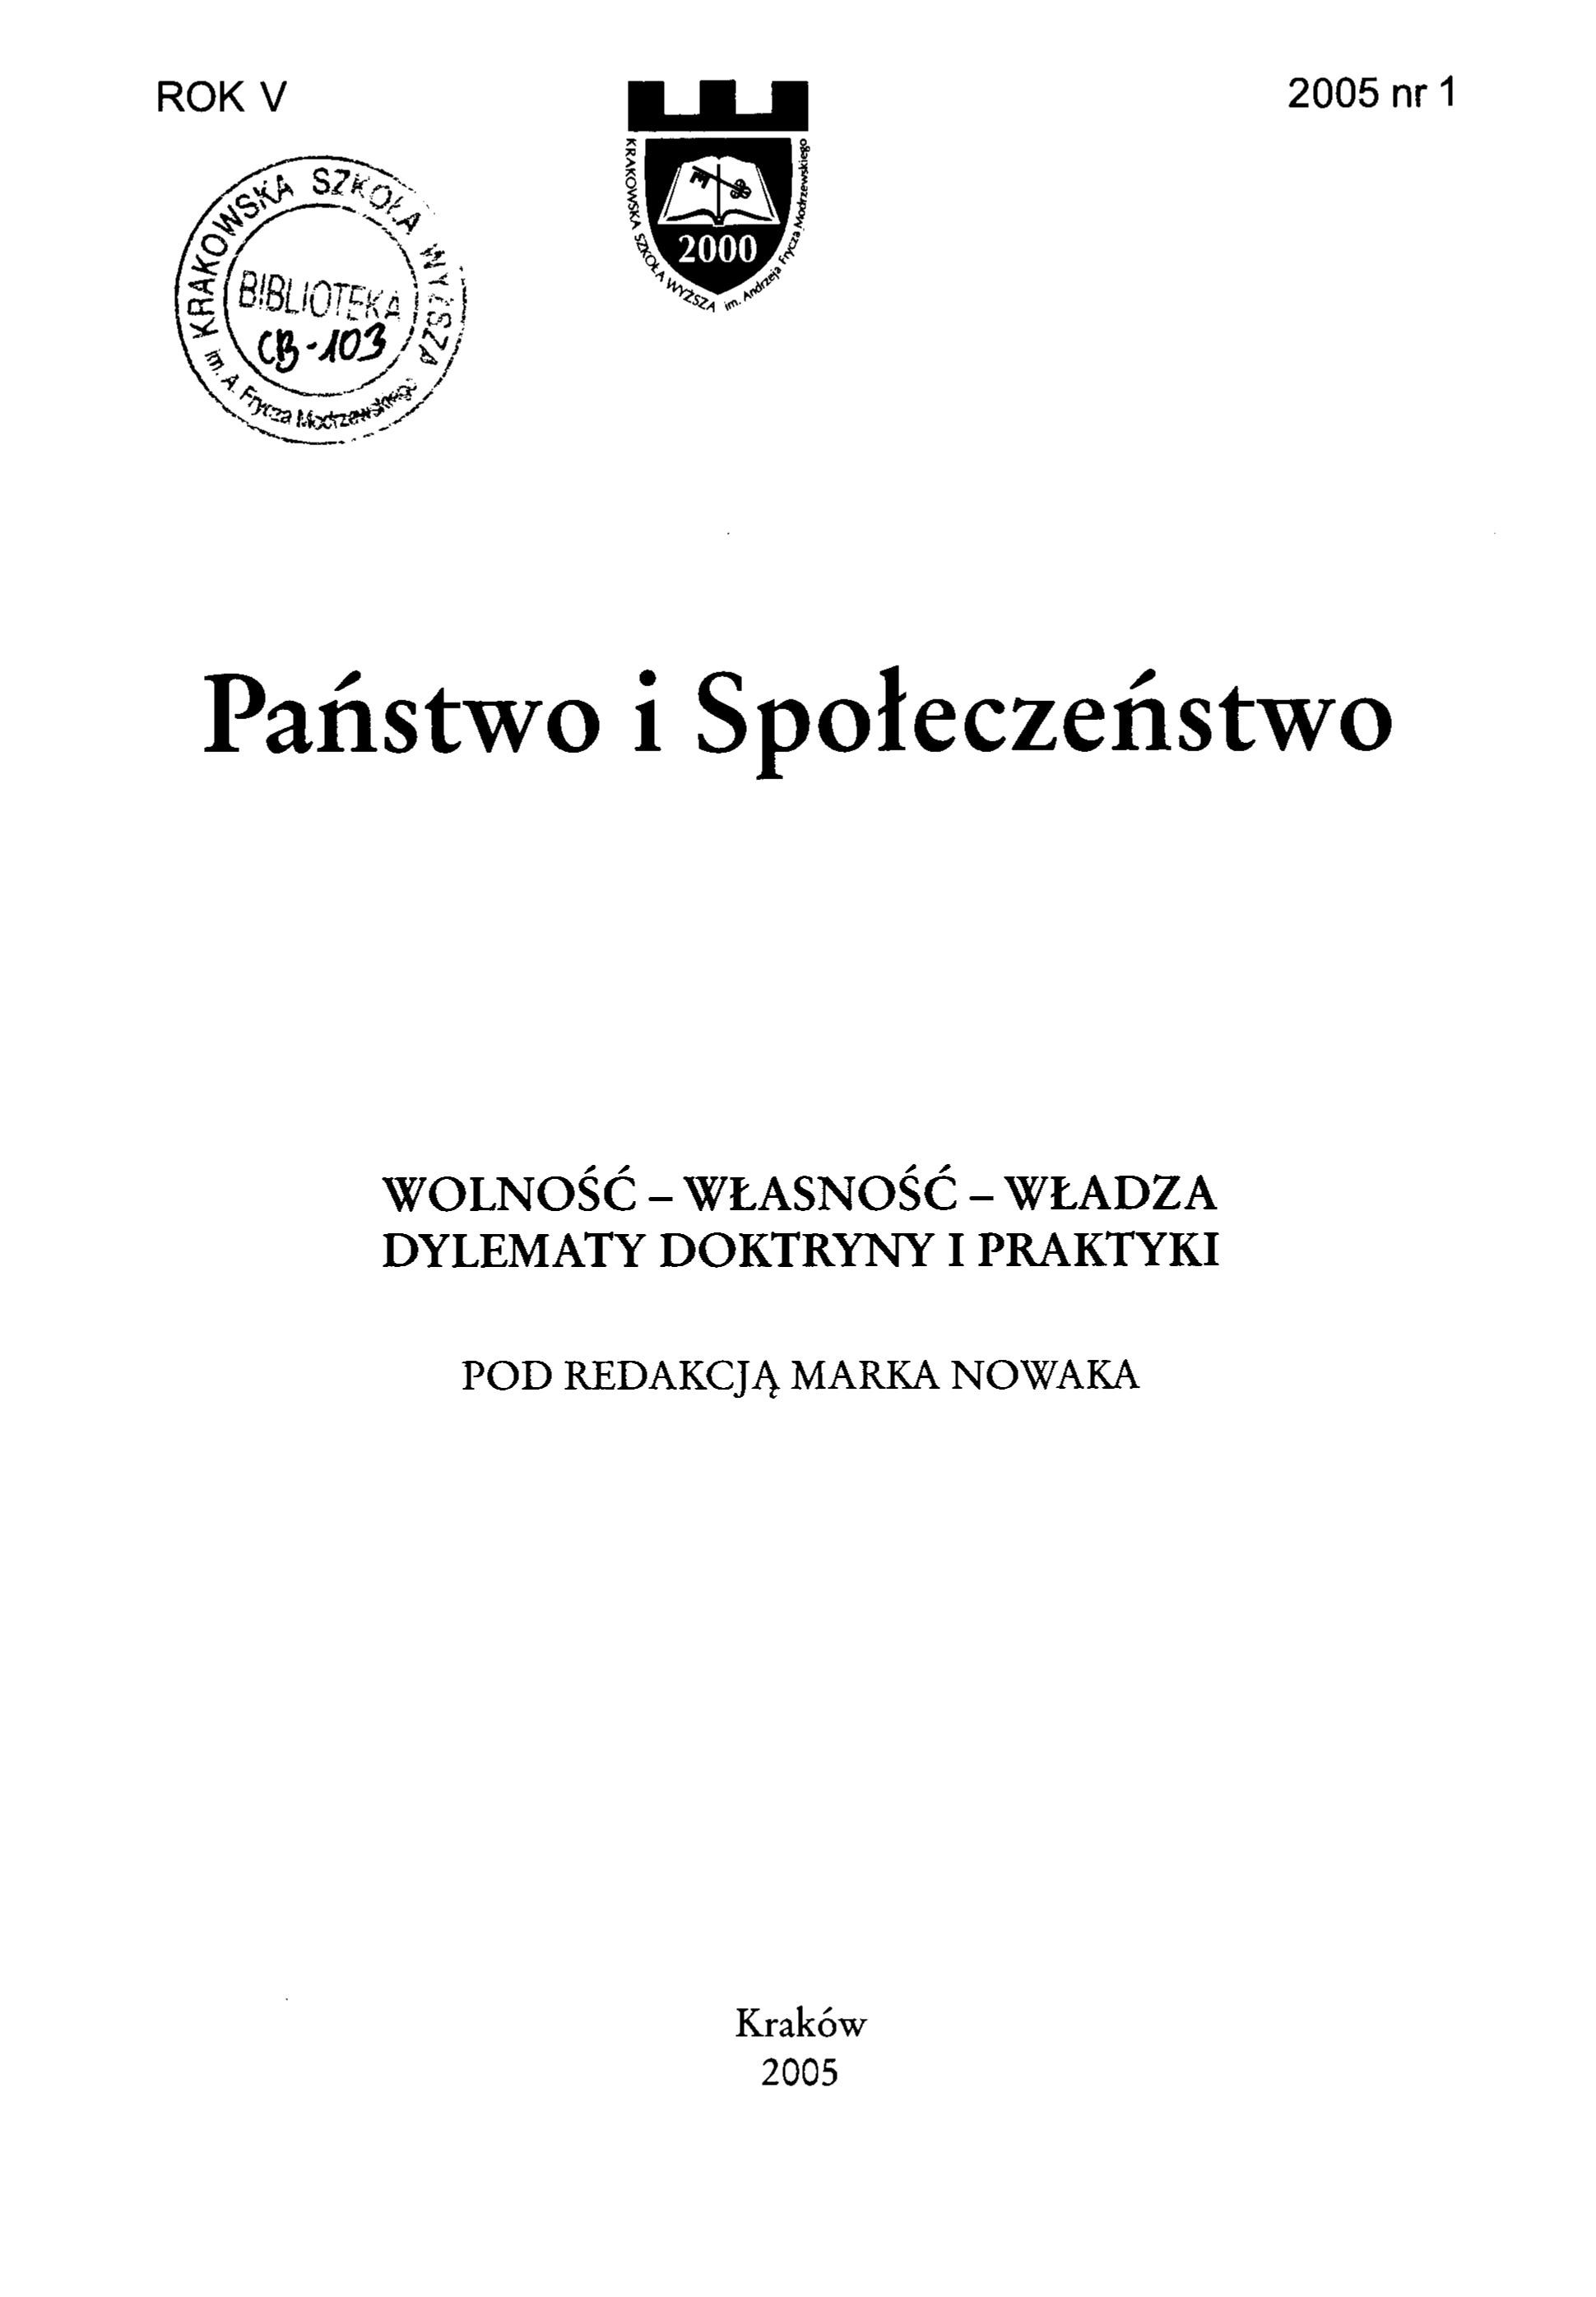 Znaczenie zasad współżycia społecznego w prawie polskim